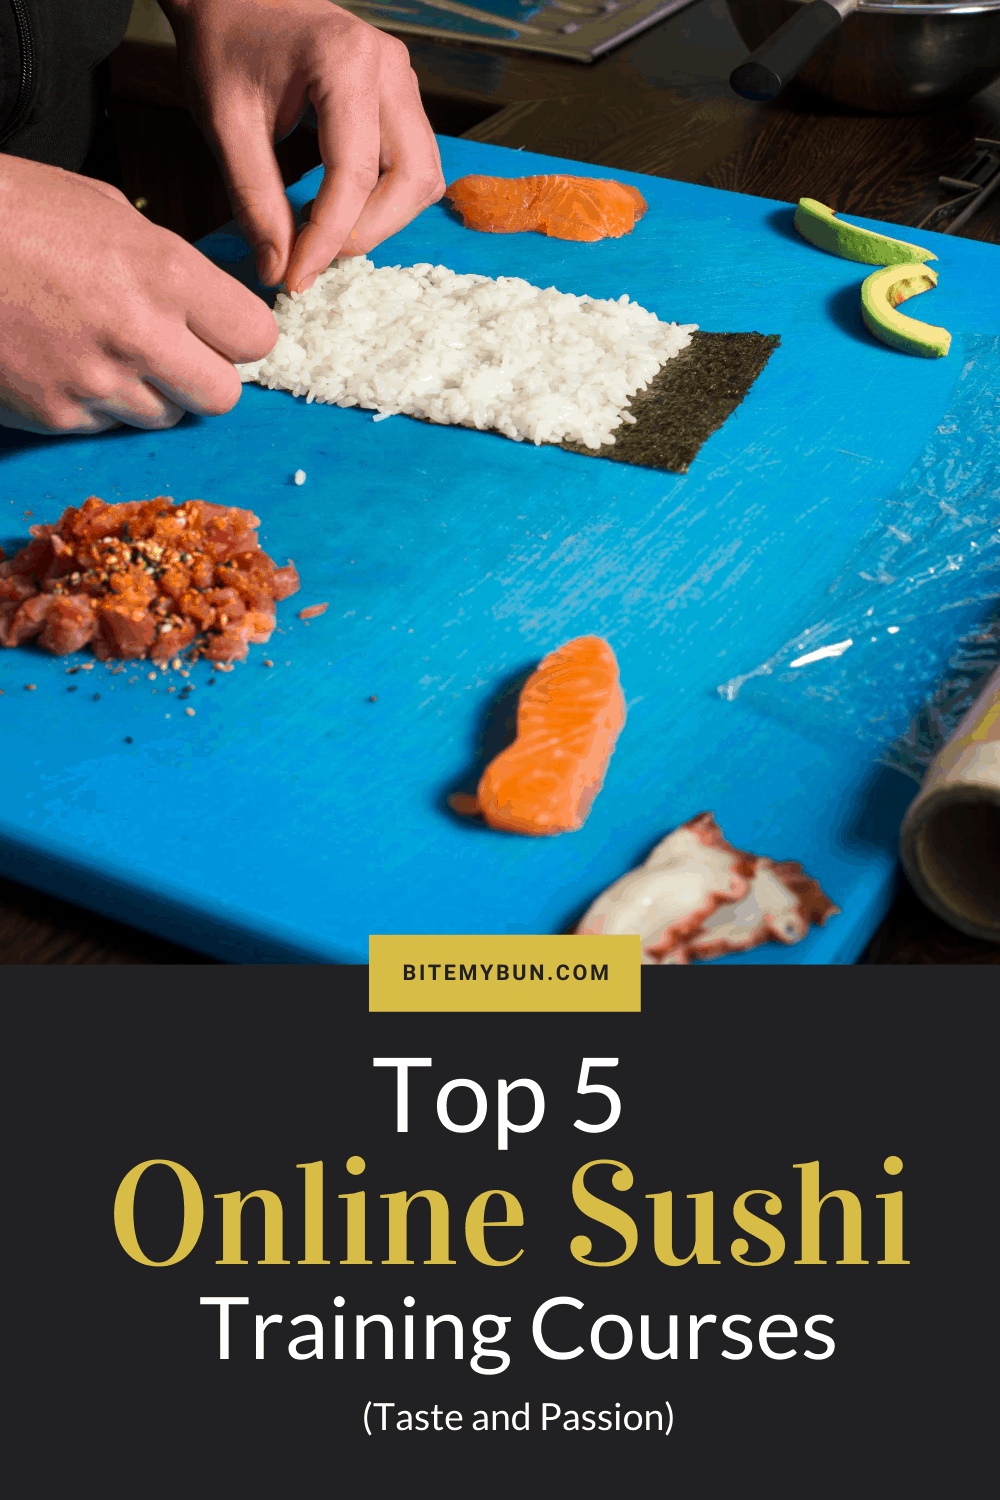 Cours de sushi en ligne